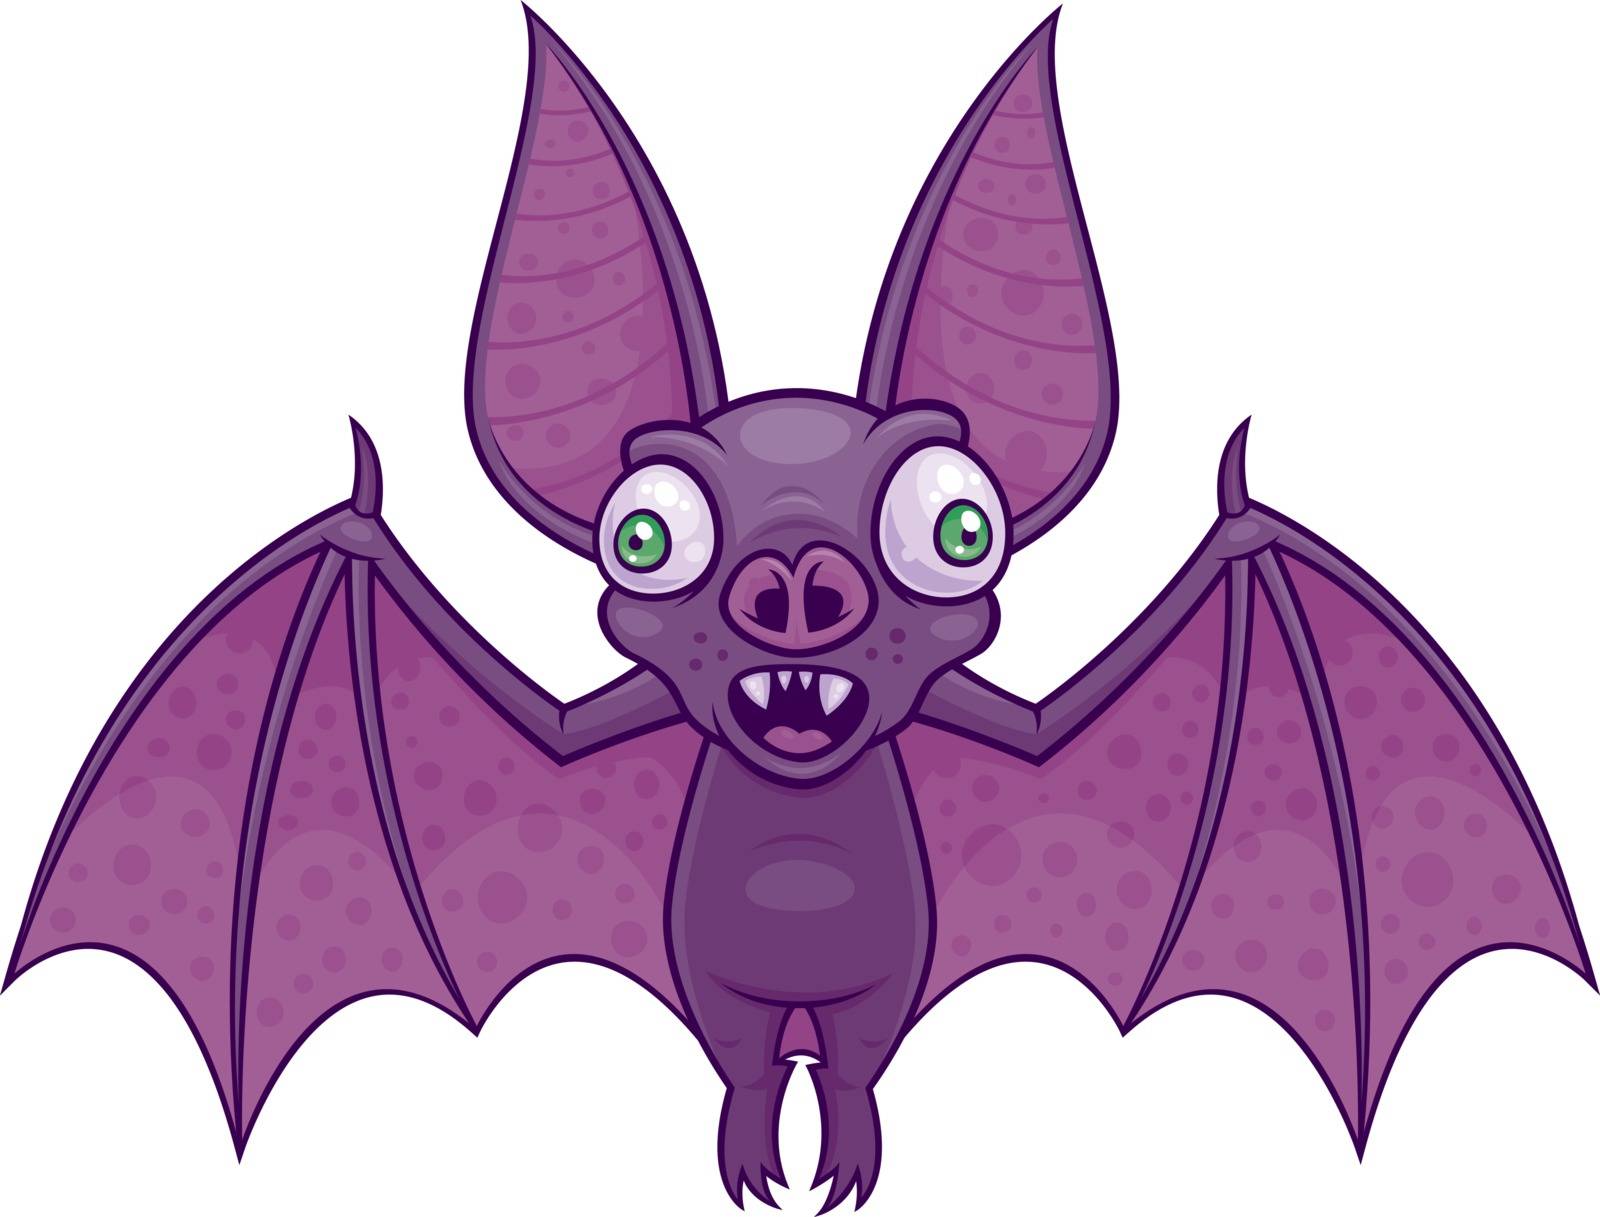 Vector cartoon illustration of a wacky vampire bat.